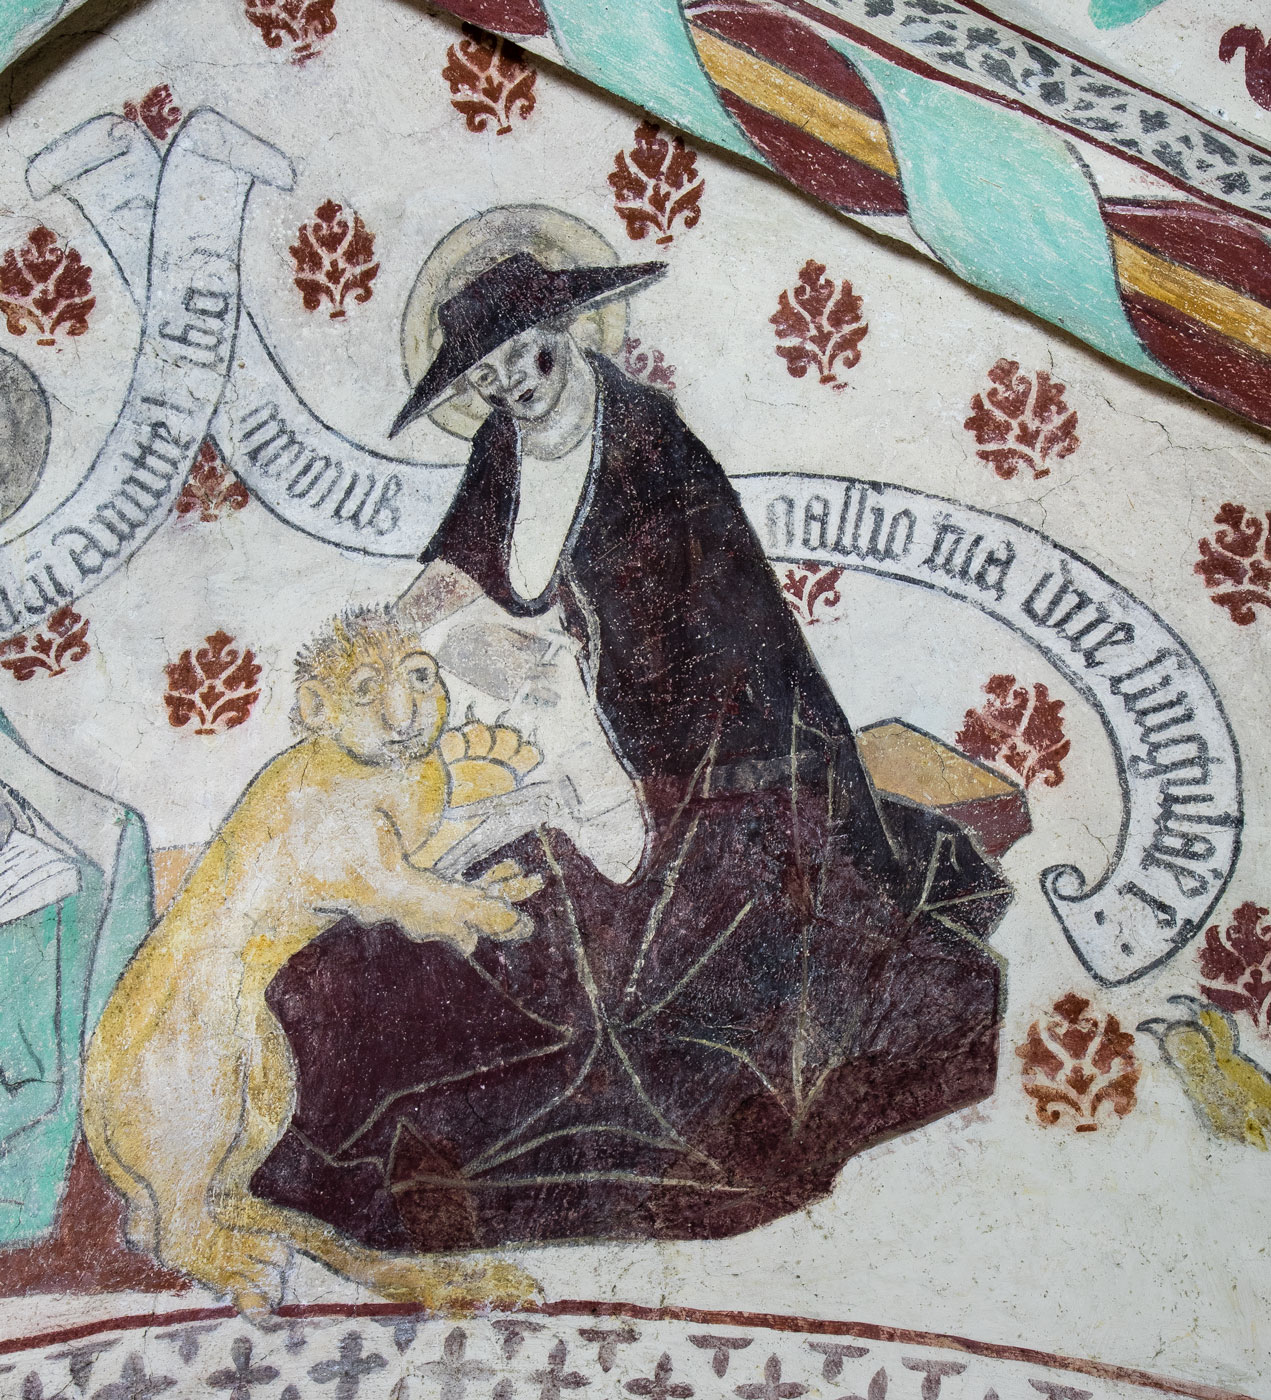 Hieronymus, kardinal, en av de fyra latinska kyrkofäderna med sin symbol lejonet - Yttergrans kyrka